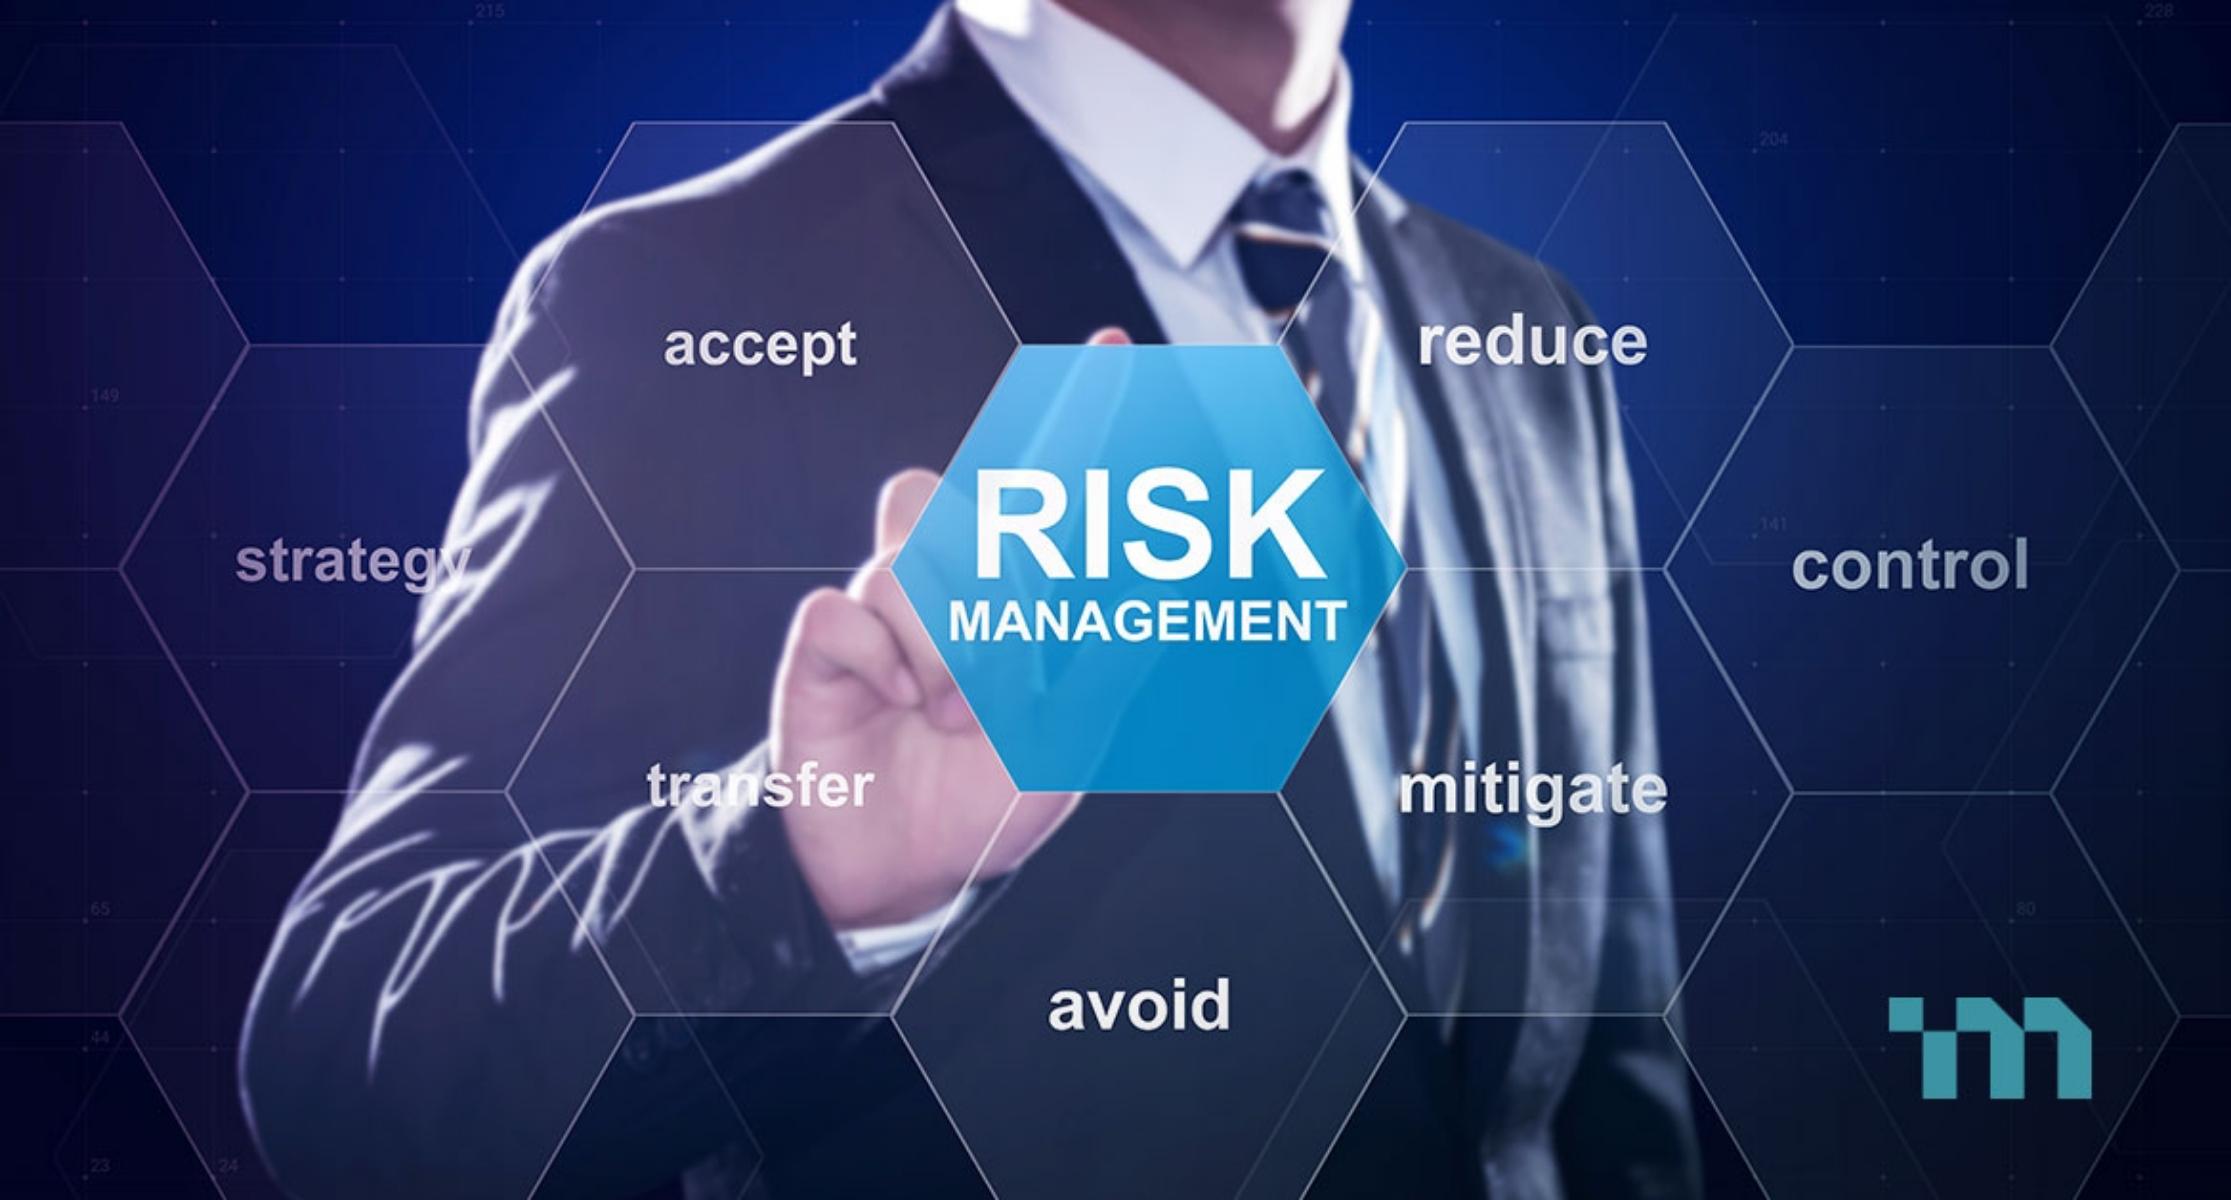 quản lý rủi ro là gì